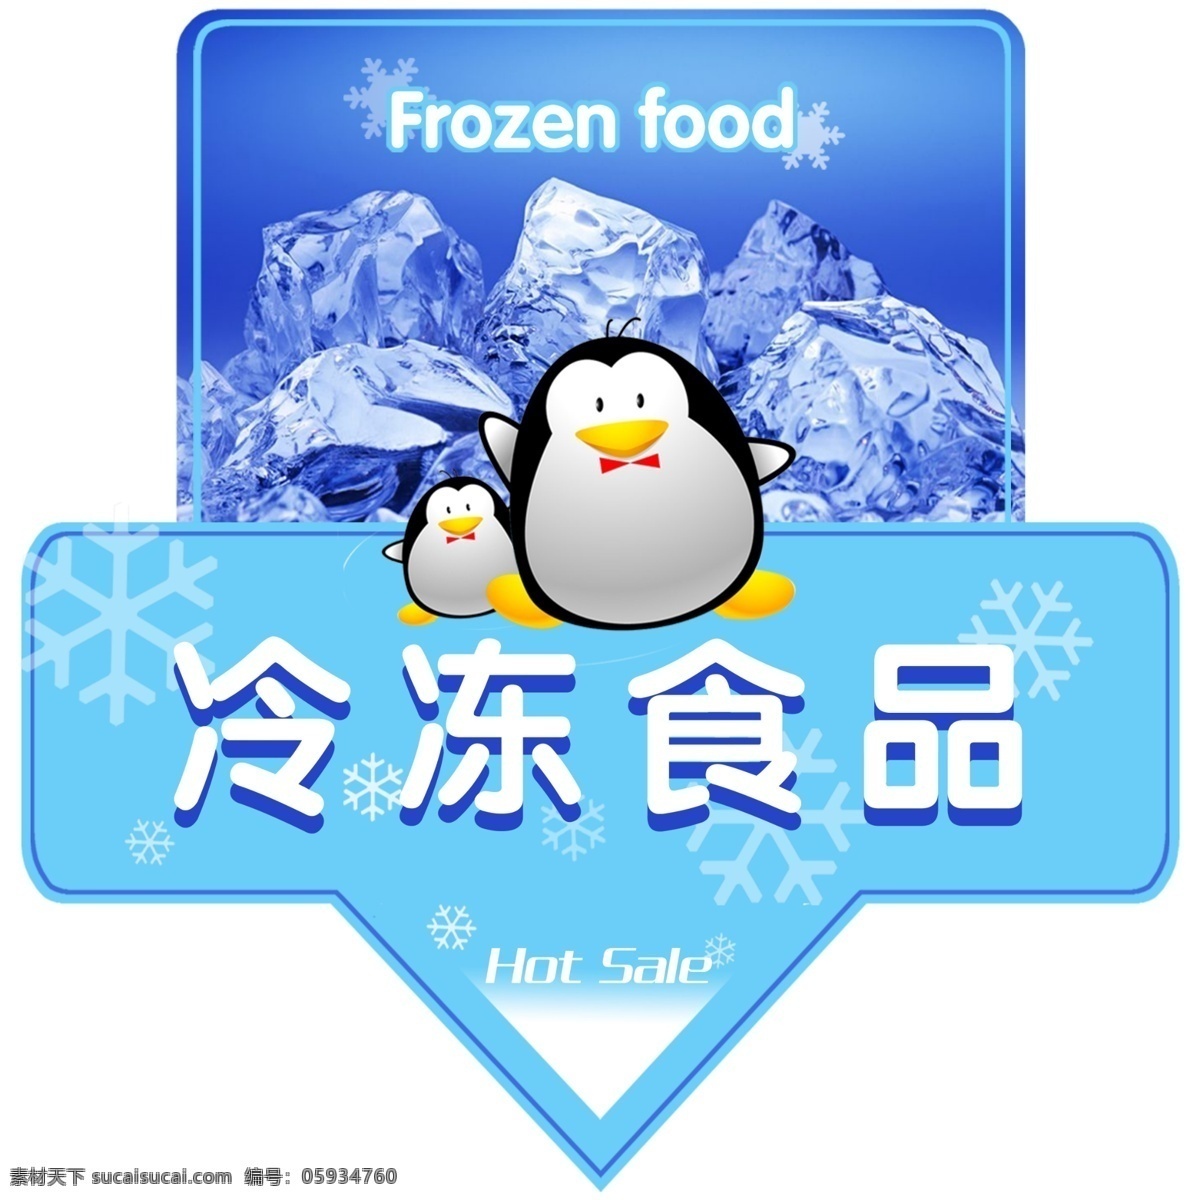 冷冻食品 异形 吊 旗 冰块 蓝色背景 企鹅 雪花 异形吊旗 海报 吊旗设计